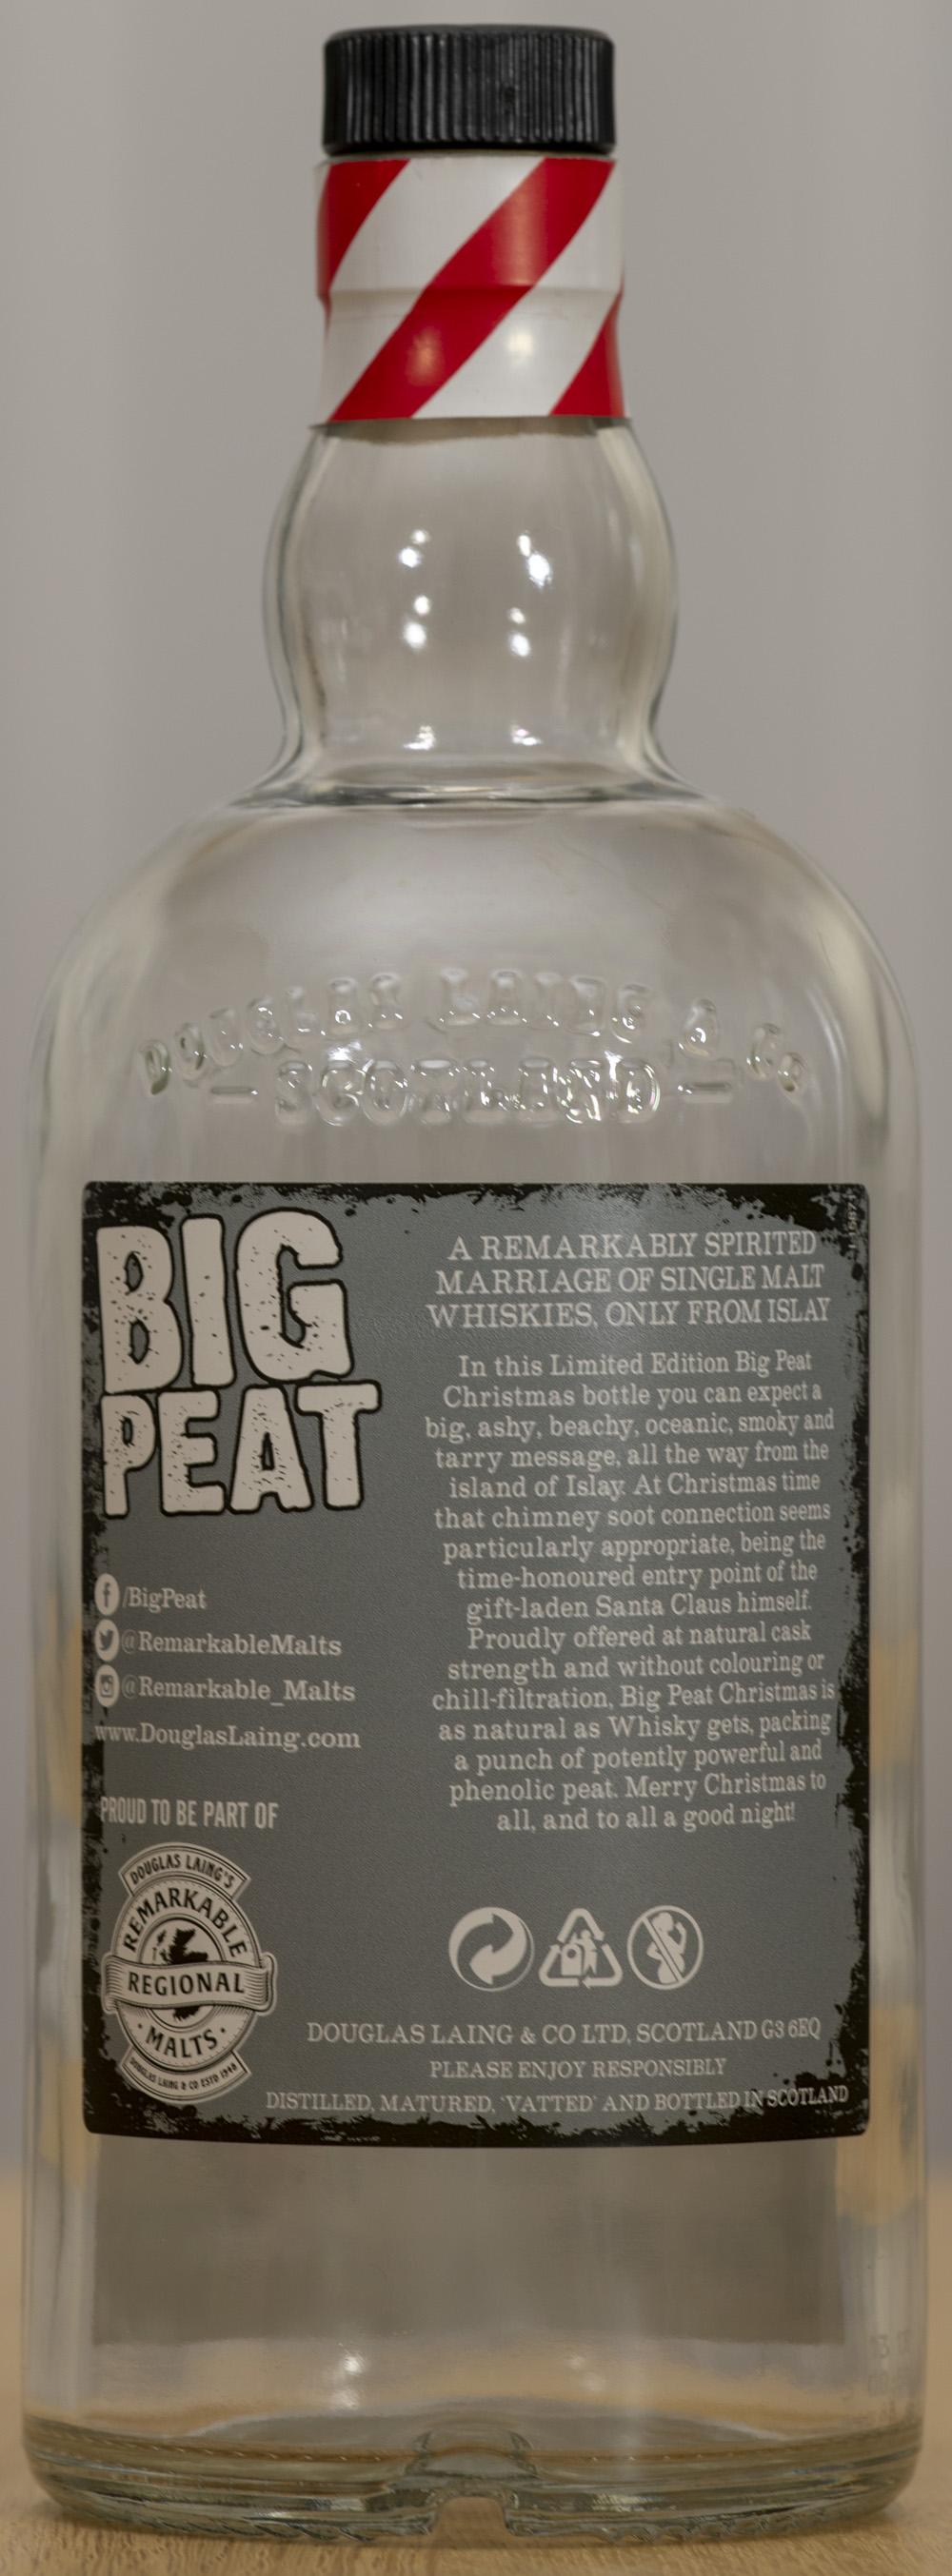 Billede: PHC_1567 - Big Peat Christmas Edition 2018 - bottle back.jpg